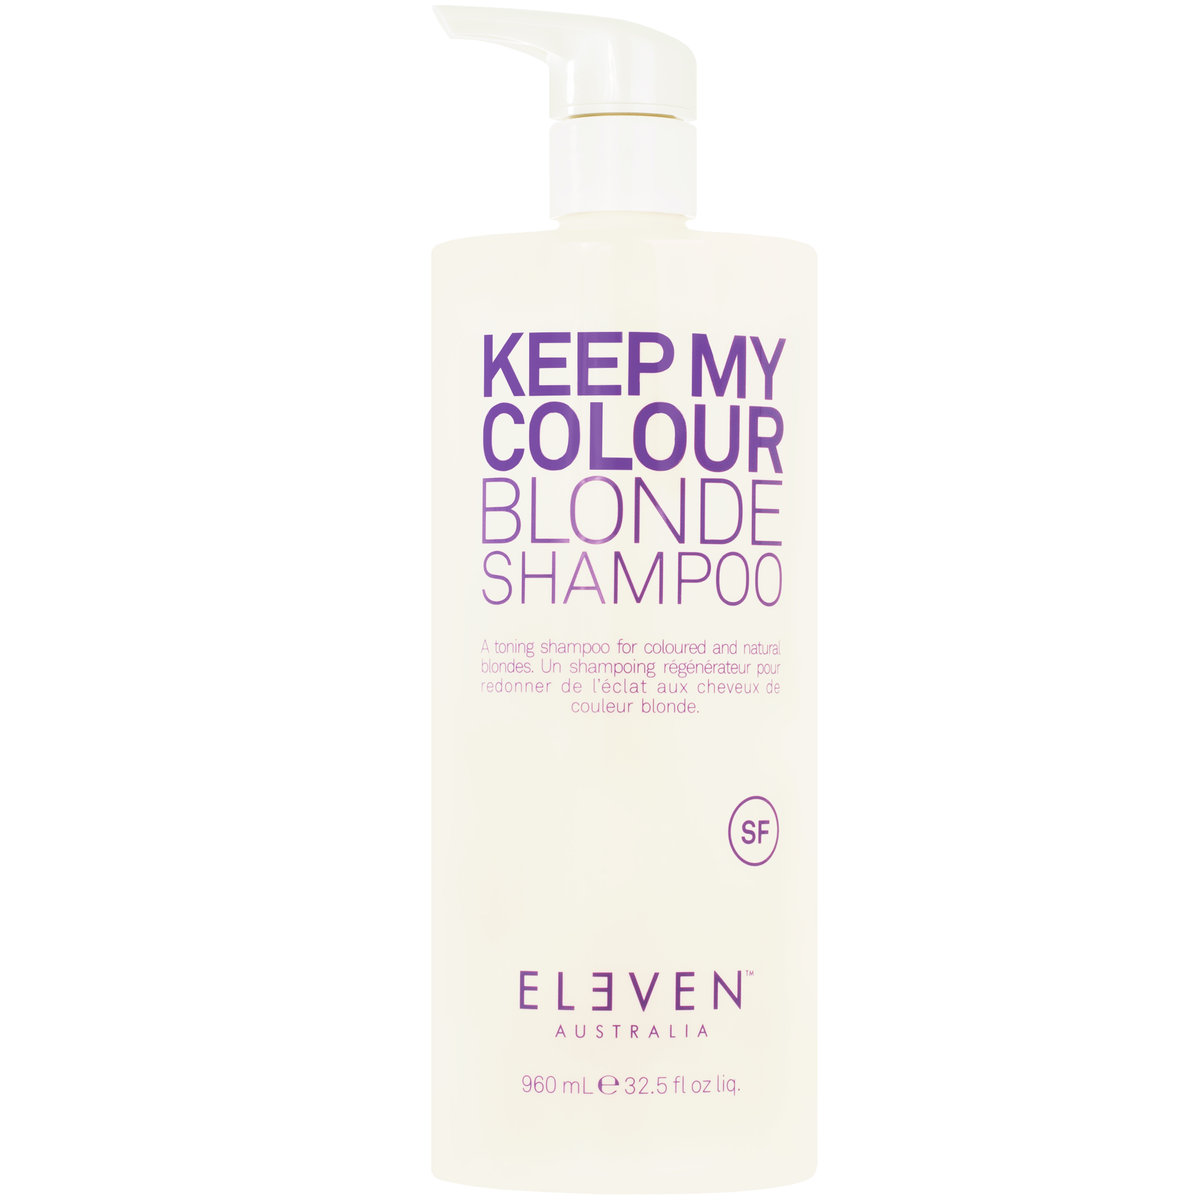 Eleven Australia, Keep My Colour Blonde Shampoo Szampon Do Włosów Blond, Pielęgnuje, Nawilża, Chroni Kolor, 960 Ml